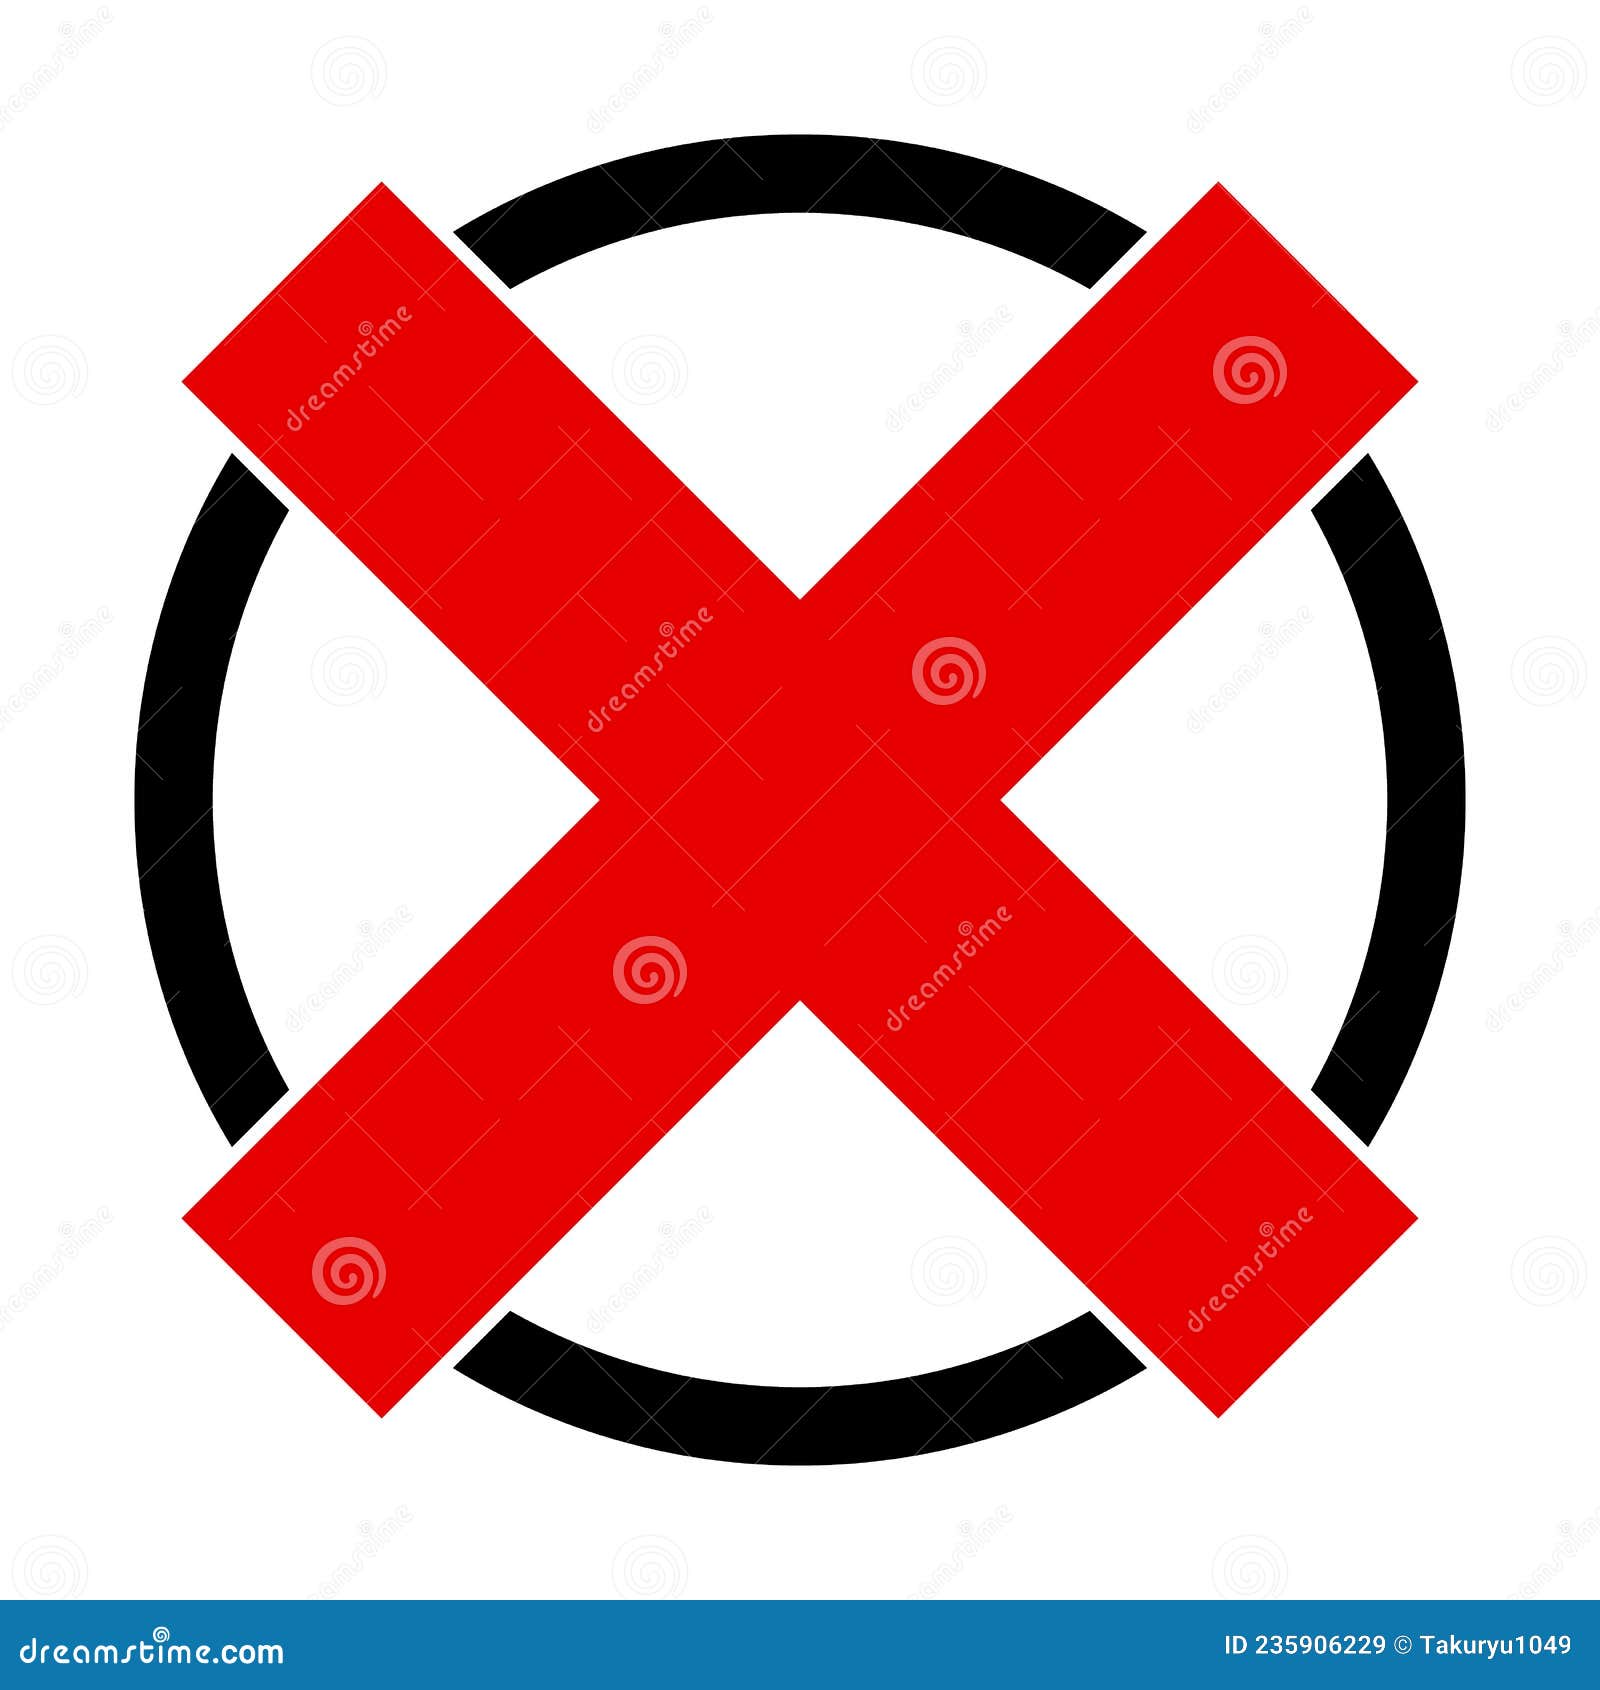 red cross mark. No warning symbol Stock Illustration